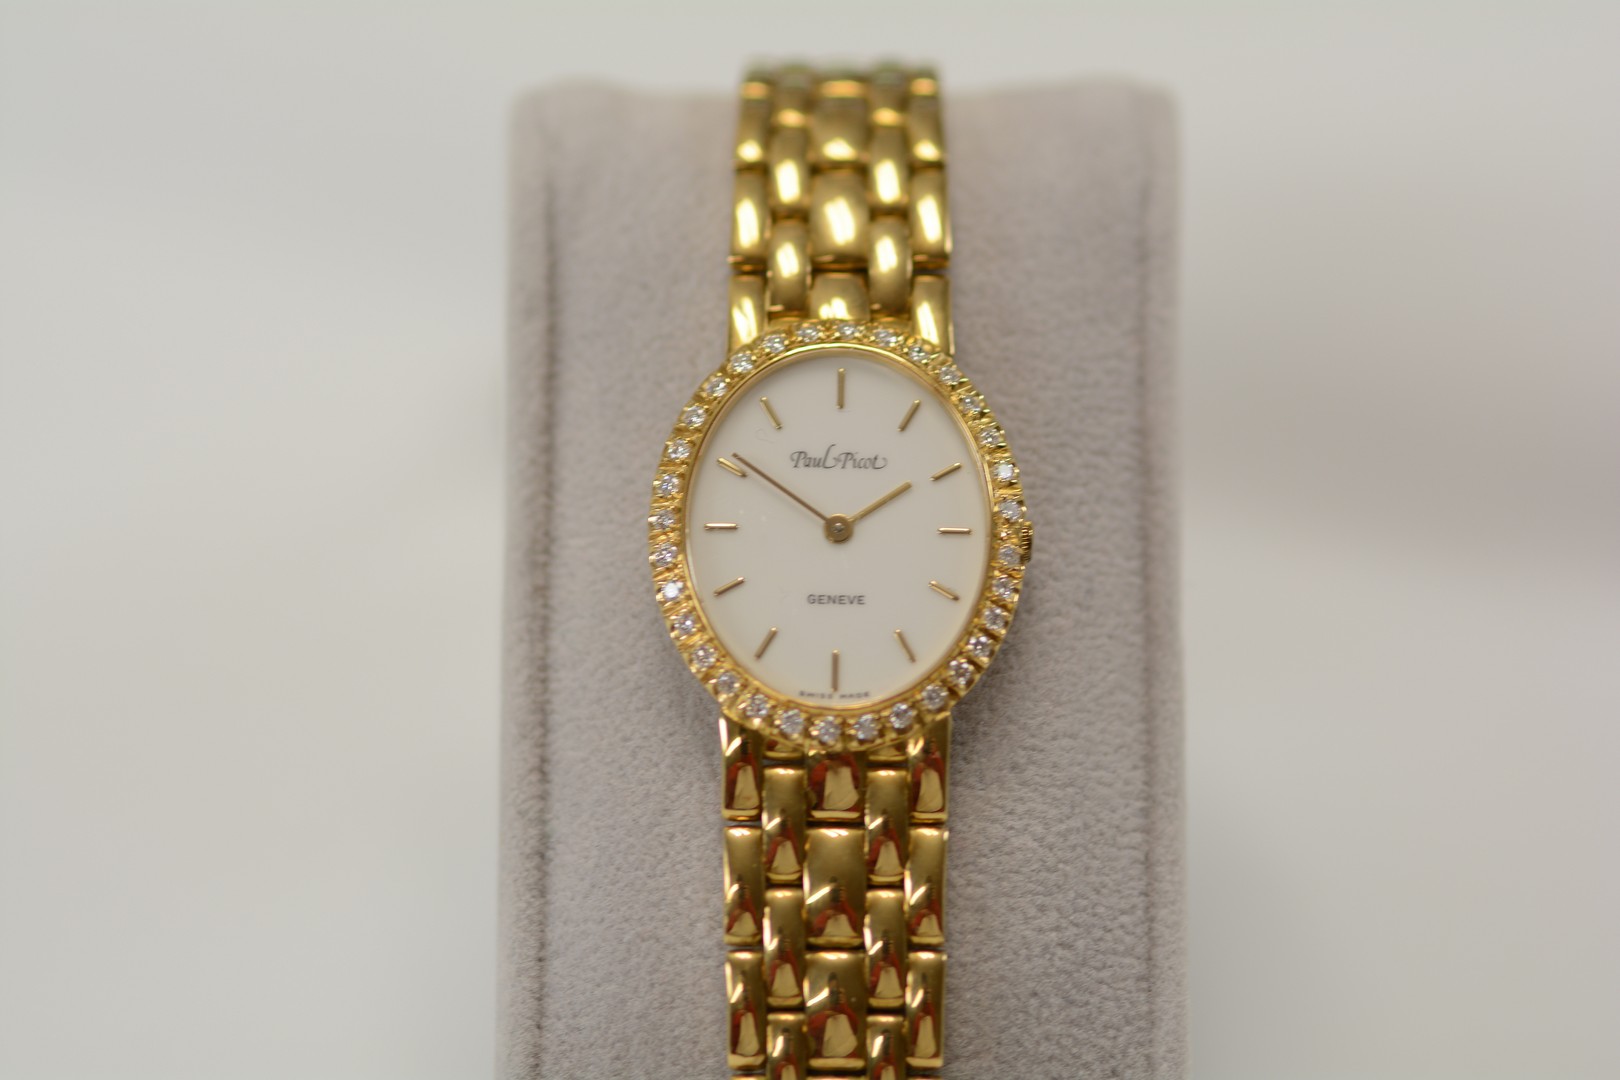 Paul Picot / Diamond - Lady's Yellow gold Wrist Watch - Image 5 of 16